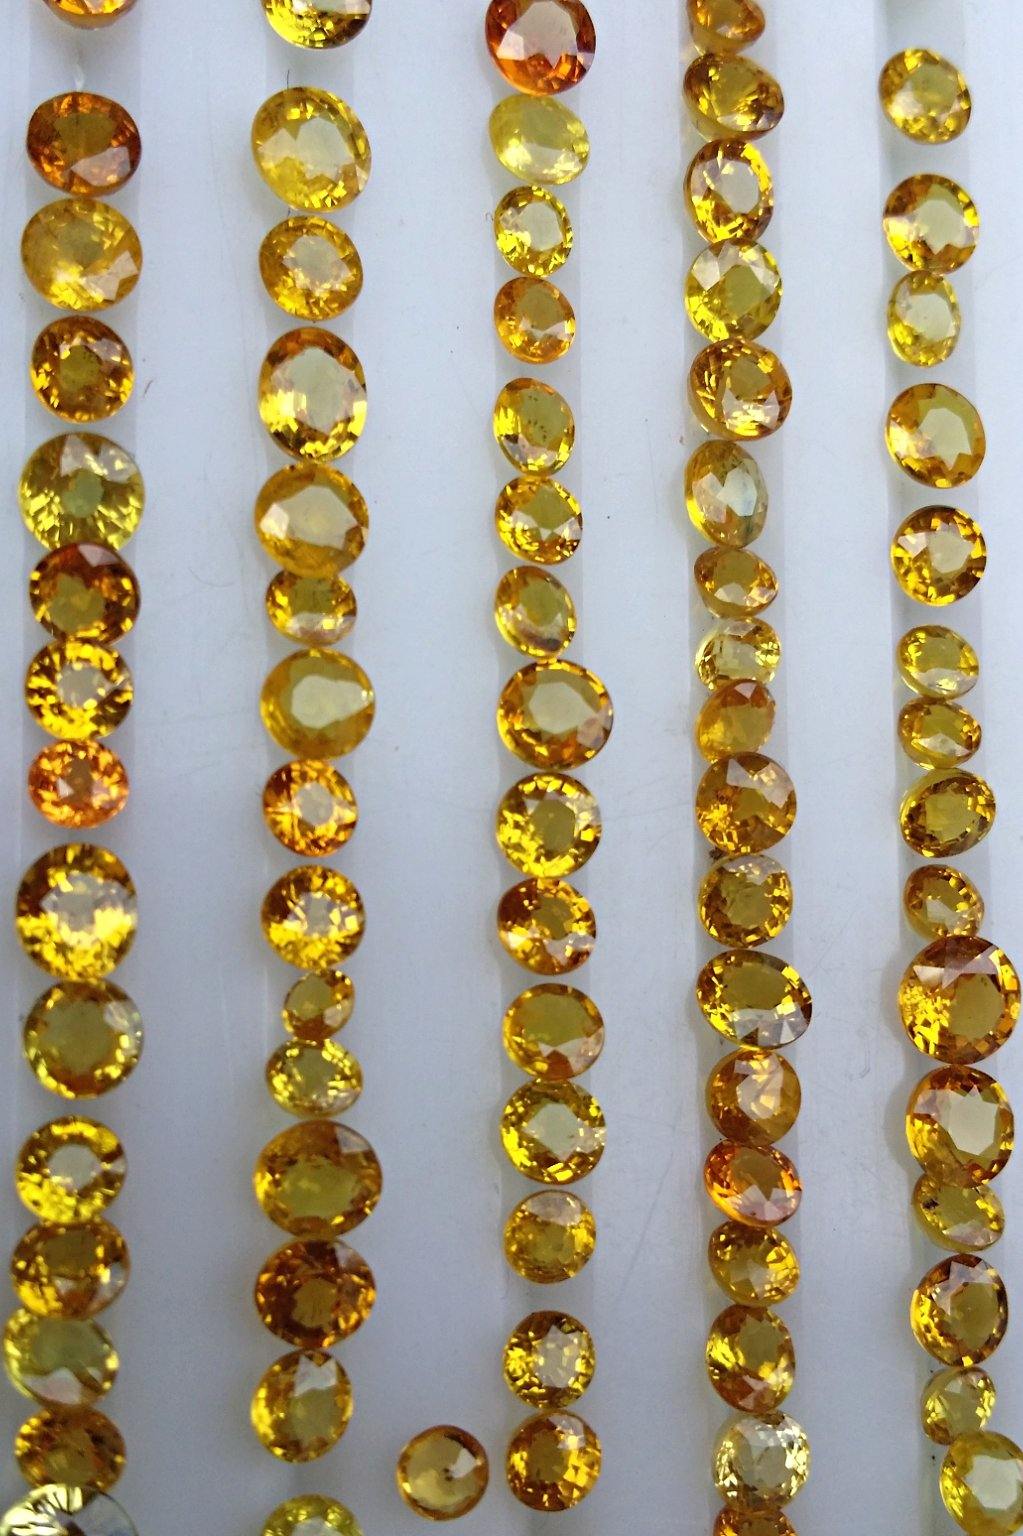 Yellow Sapphire gemstones, Corundum